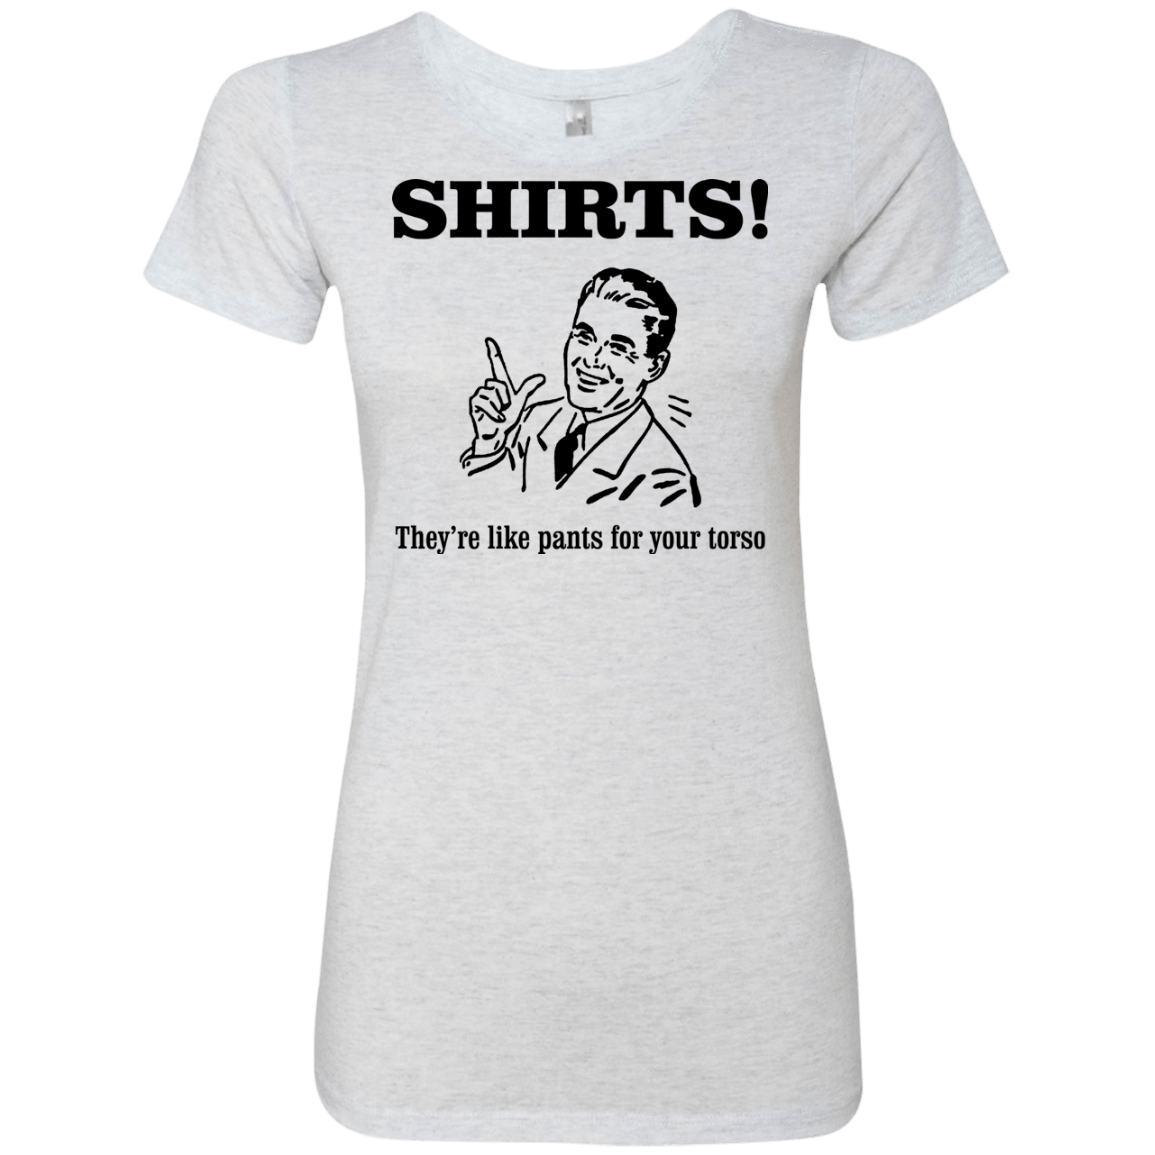 T-Shirts Heather White / Small Shirts like pants Women's Triblend T-Shirt